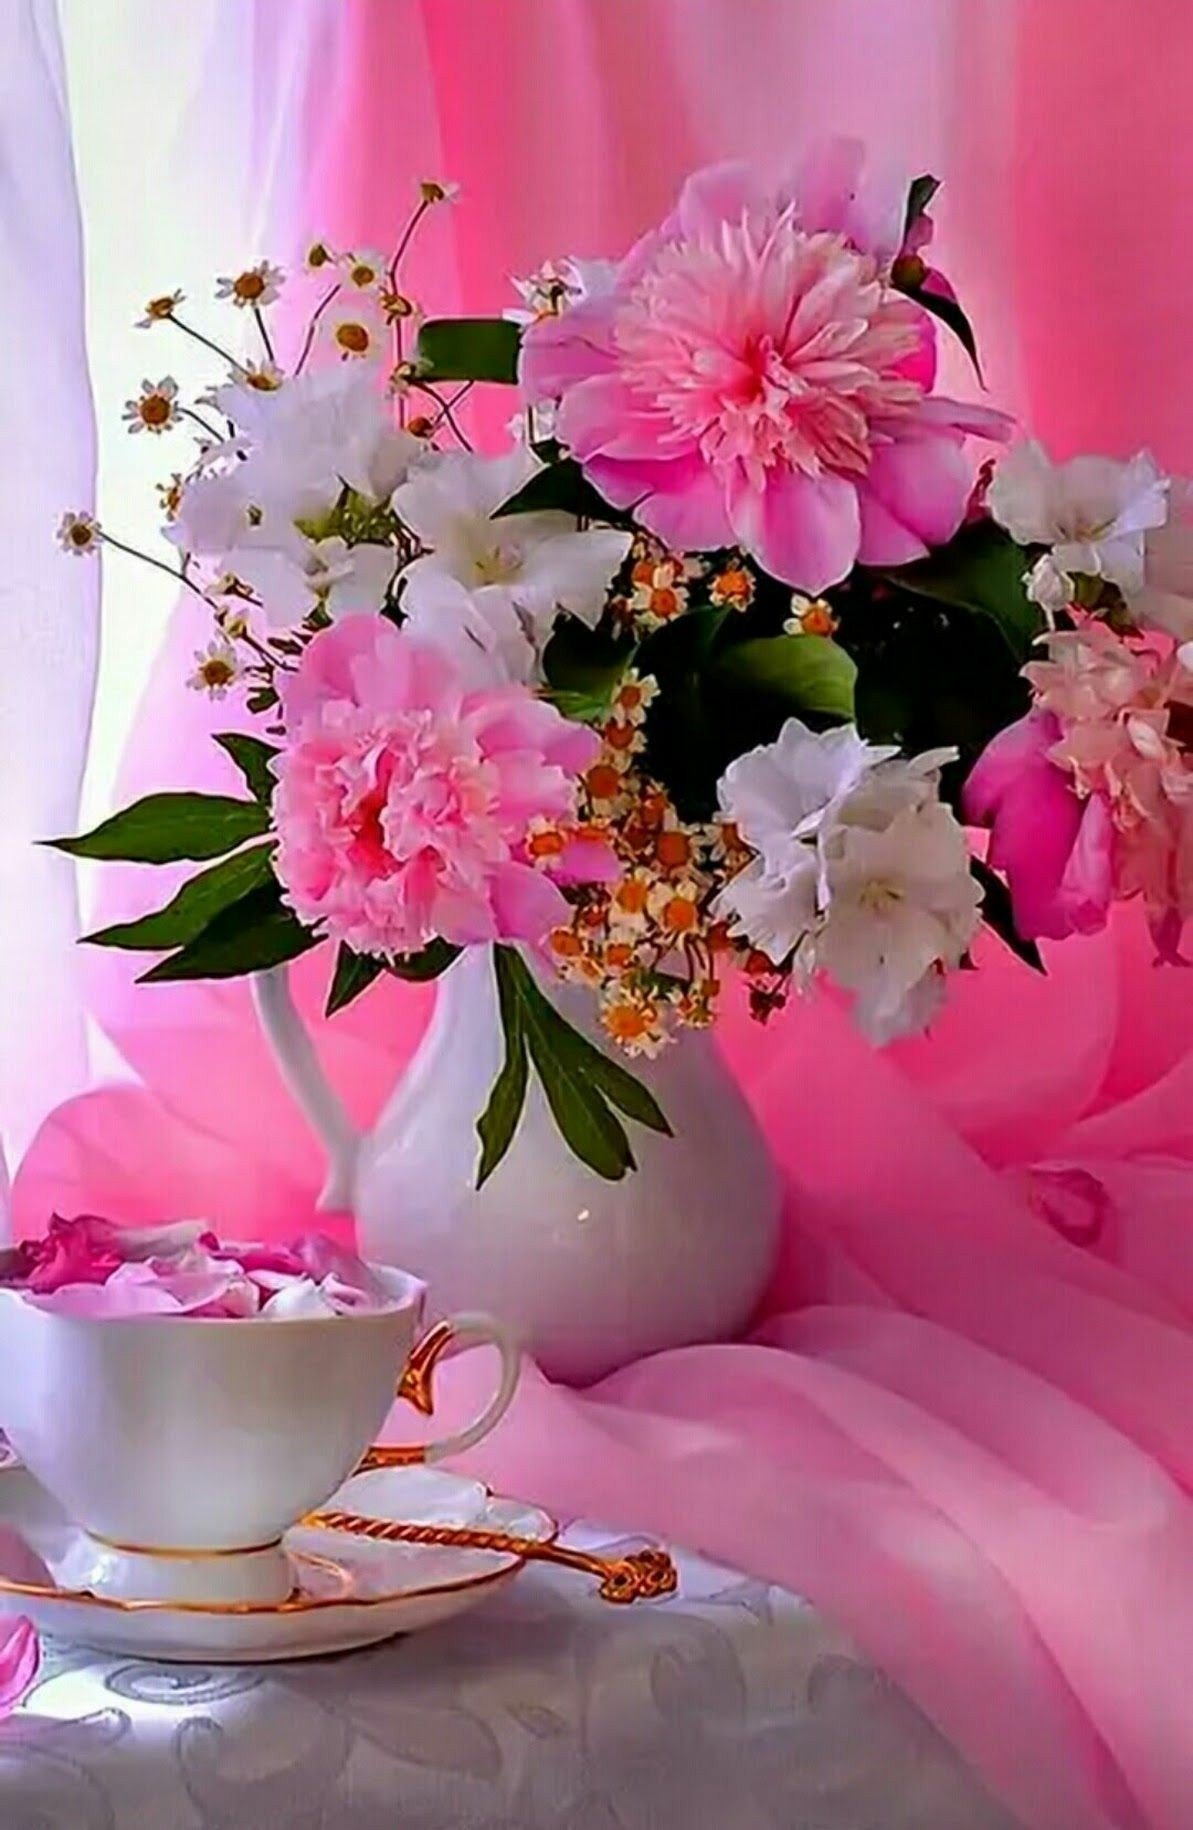 Картинка с цветами доброе утро хорошего дня. Красивые и добрые пожелания с добрым утром. Пожелания с добрым утром с красивыми цветами. Доброе утро с цветами и пожеланиями. Поздравление с добрым утром с цветами.